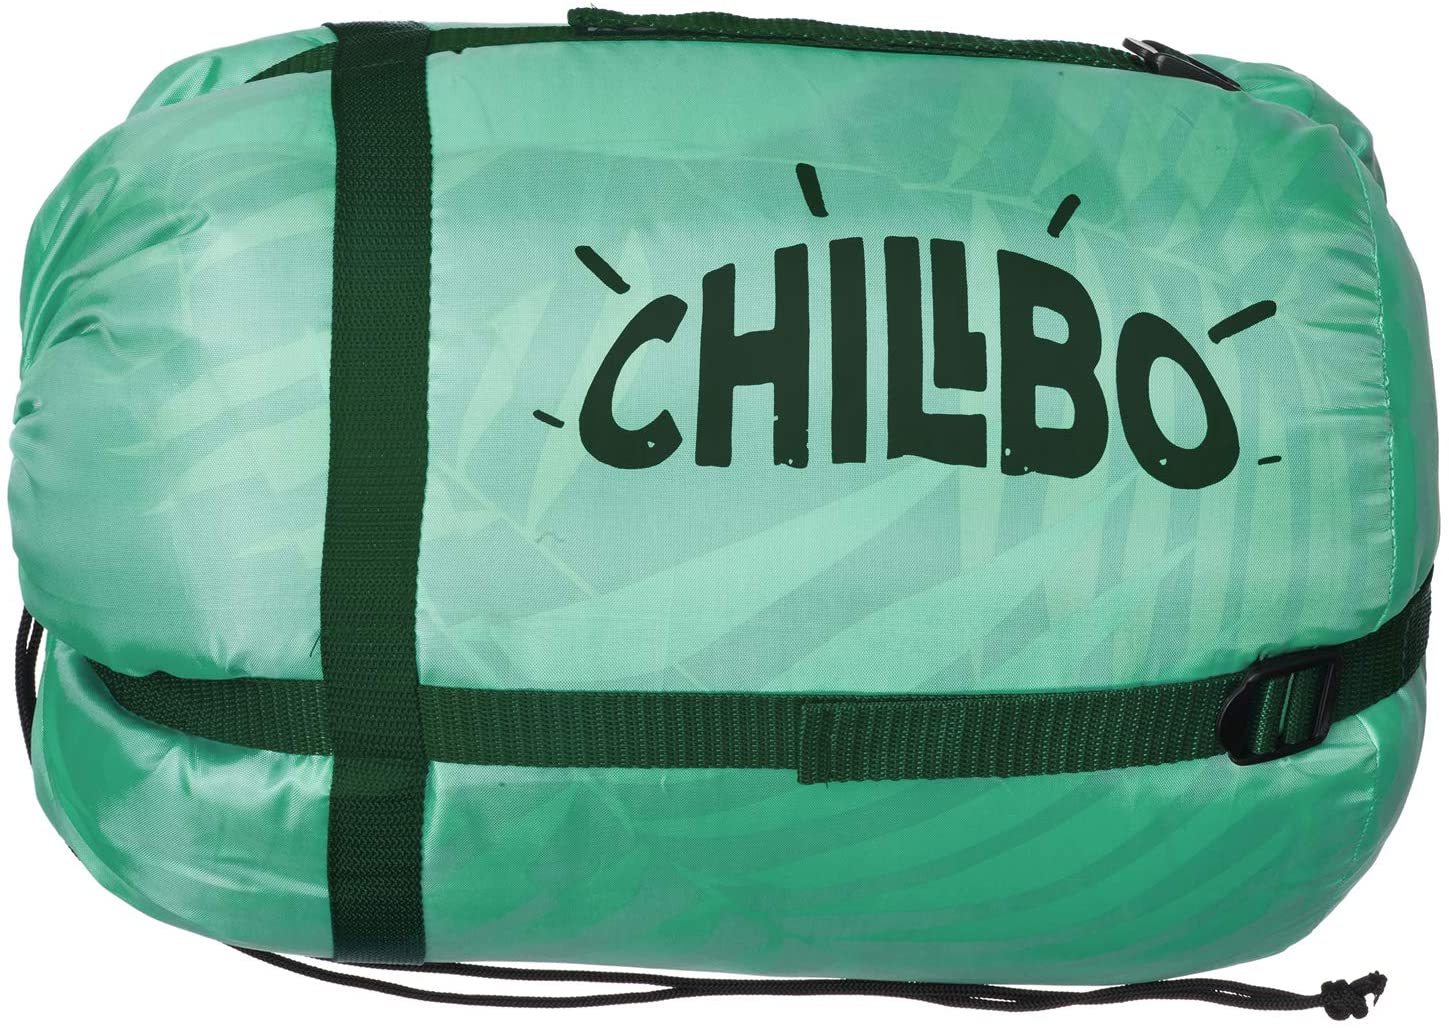 Chillbo® Double Sleeping Bag